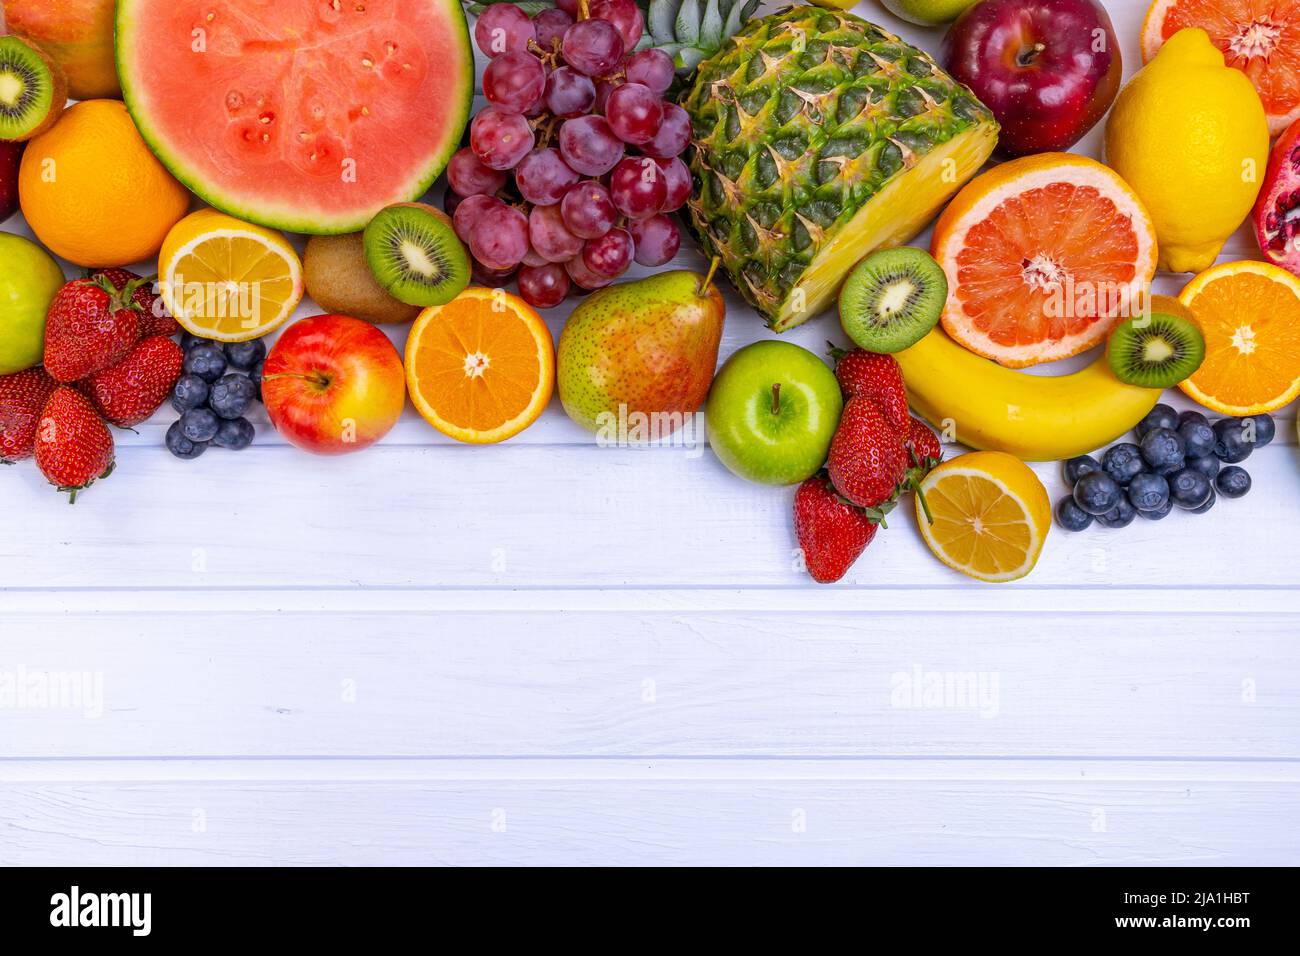 Frutta fresca assortita per un'alimentazione sana. Cocomero, ananas, mela, pera, fragola, kiwi, limone, arancia, uva, mirtillo, melograno, mango, b Foto Stock